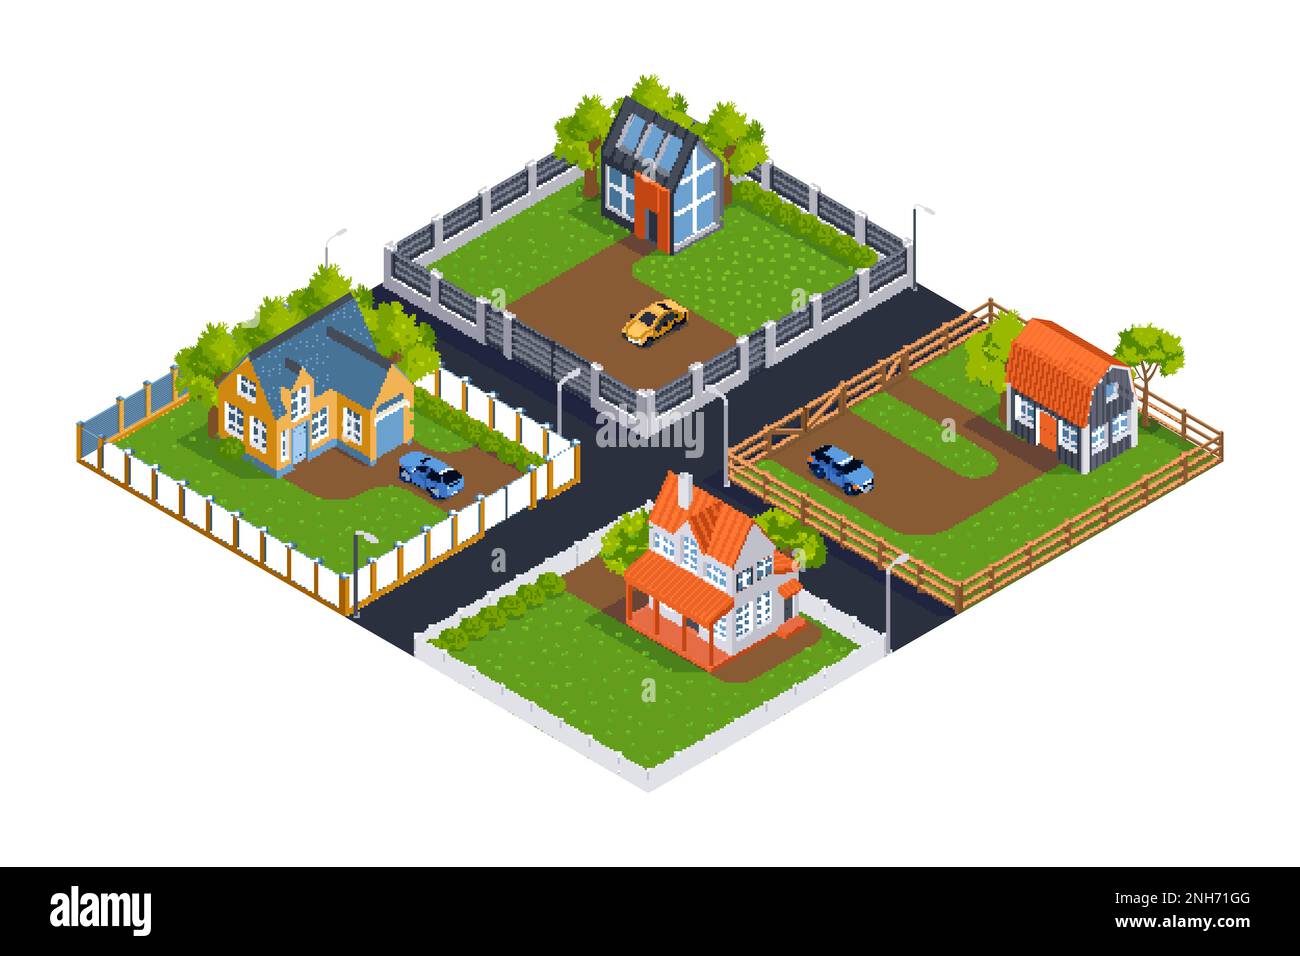 Composizione isometrica del villaggio suburbano con case private circondate da diverse recinzioni vettoriali Illustrazione Vettoriale